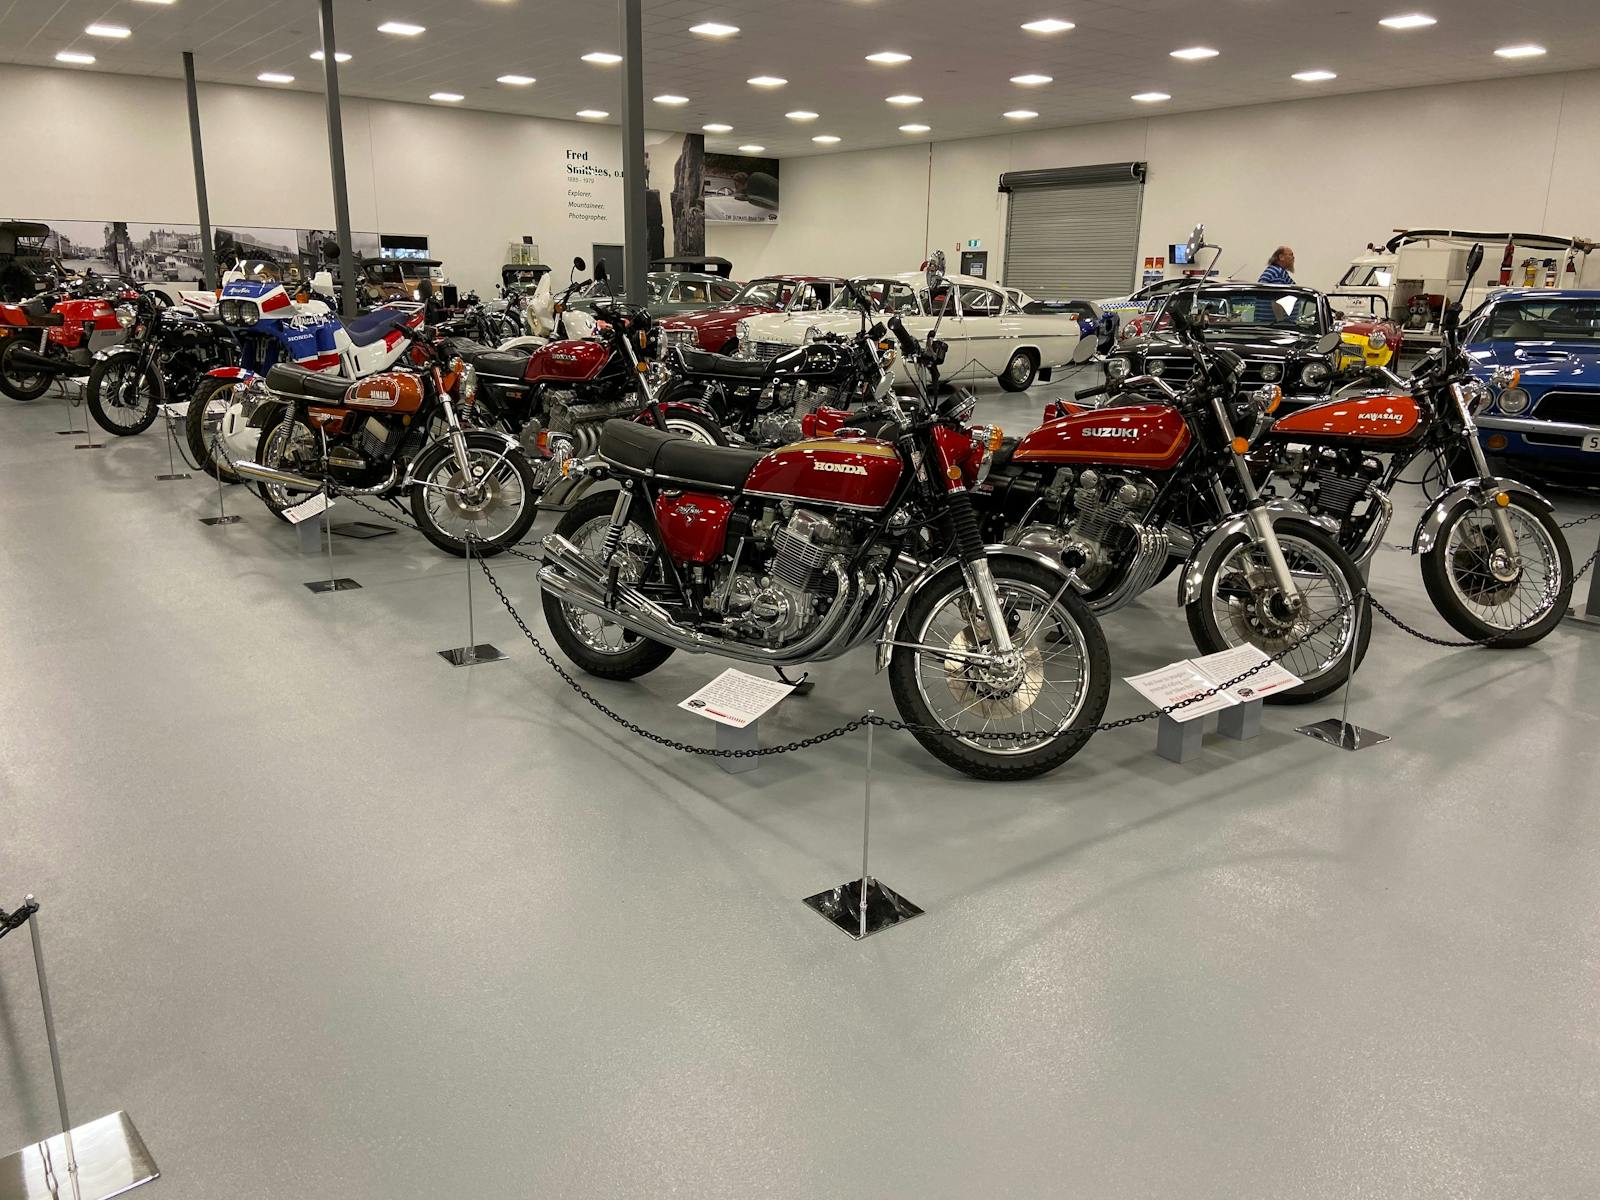 Main hall motorcycles